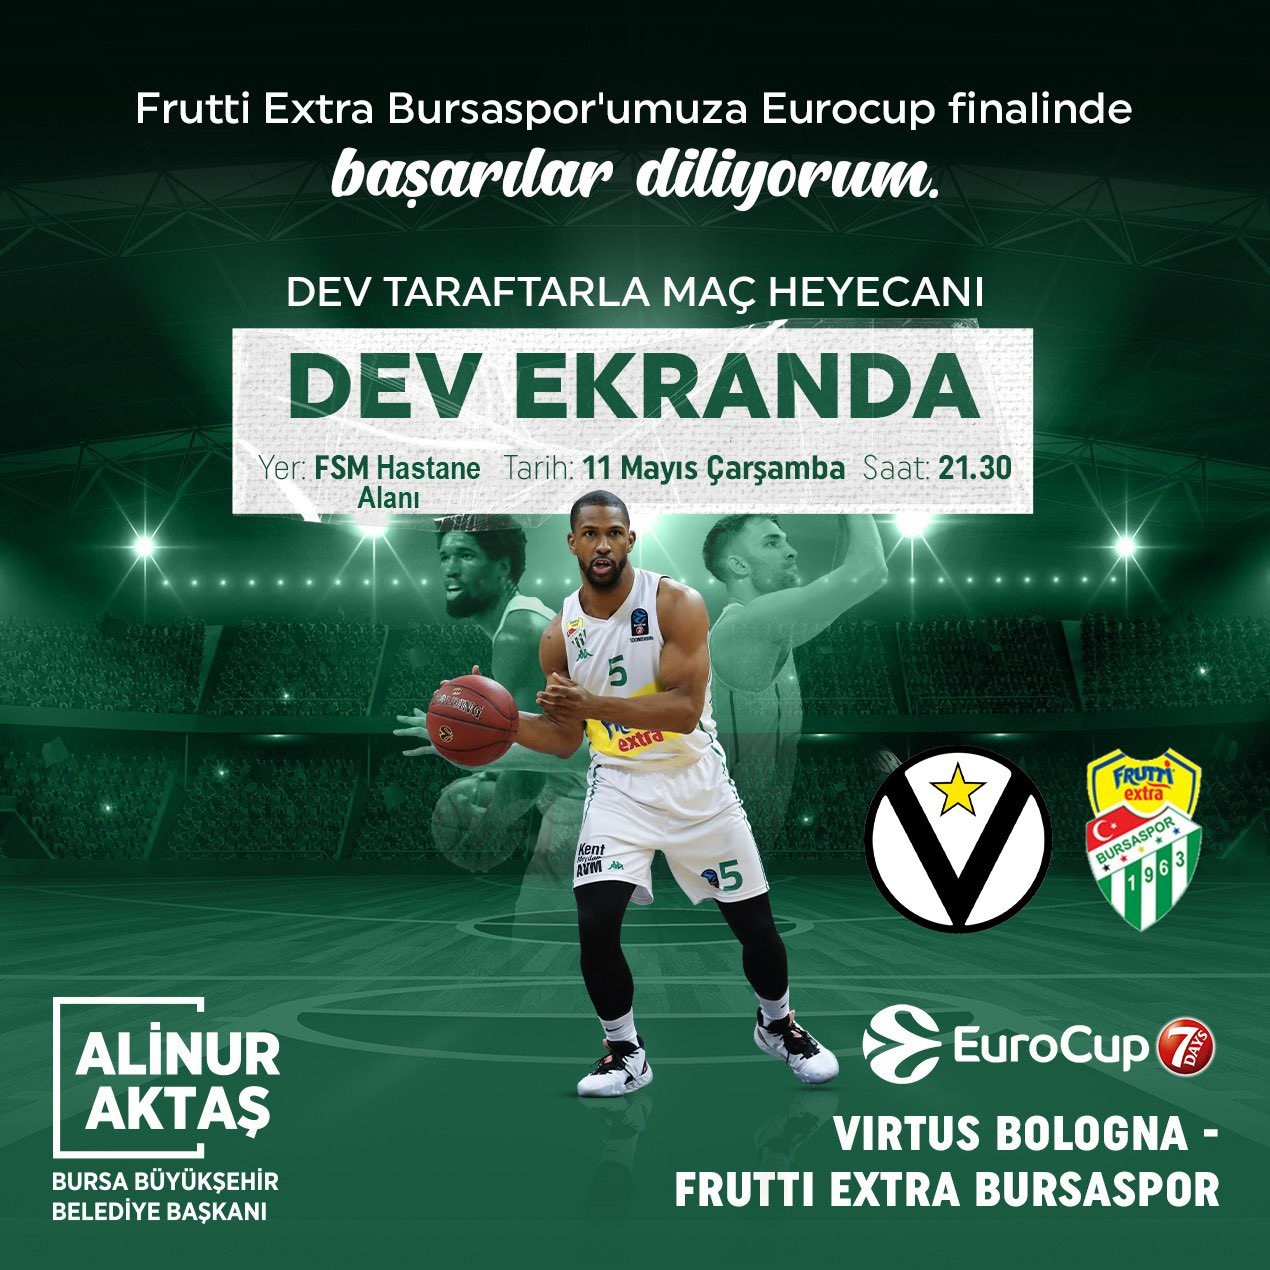 Bursa Büyükşehir Belediye Başkanı Alinur Aktaş, Frutti Extra Bursaspor’un İtalya’da oynayacağı EuroCup finali için FSM Hastane Alanı’na dev ekran ...